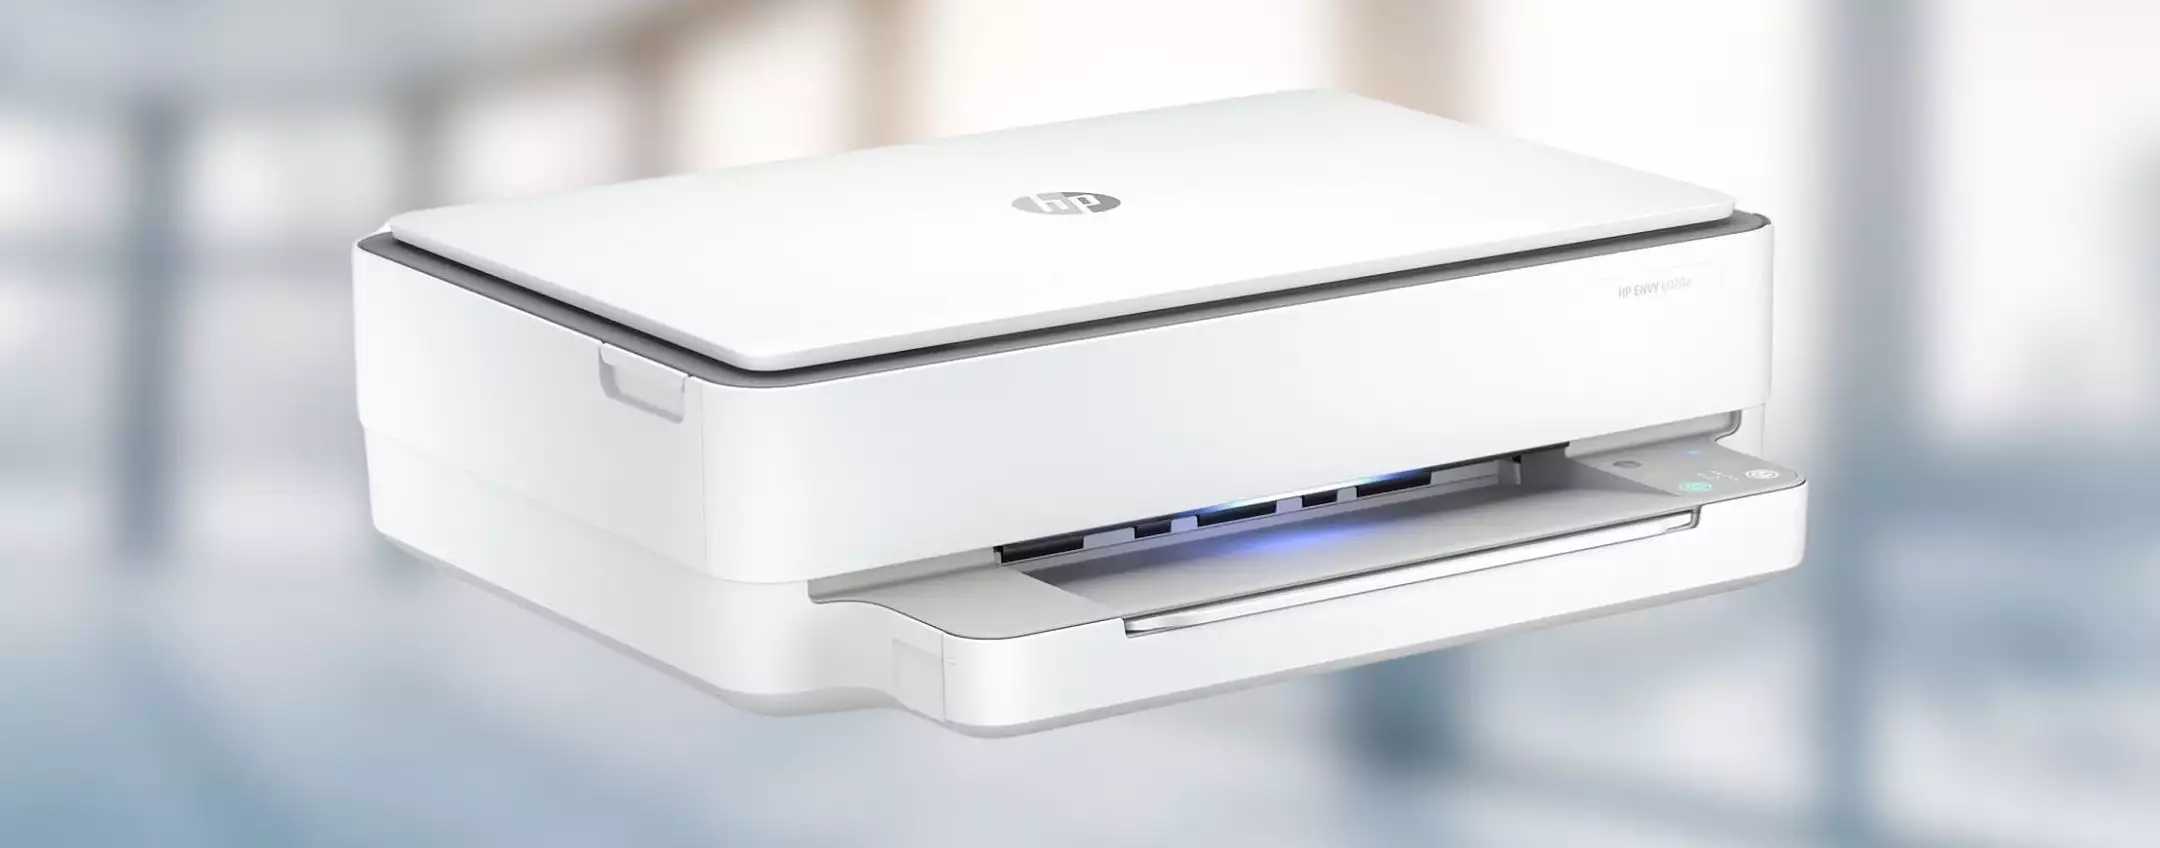 Stampante multifunzione HP con stampa fronte e retro automatica in maxi sconto (-46%)